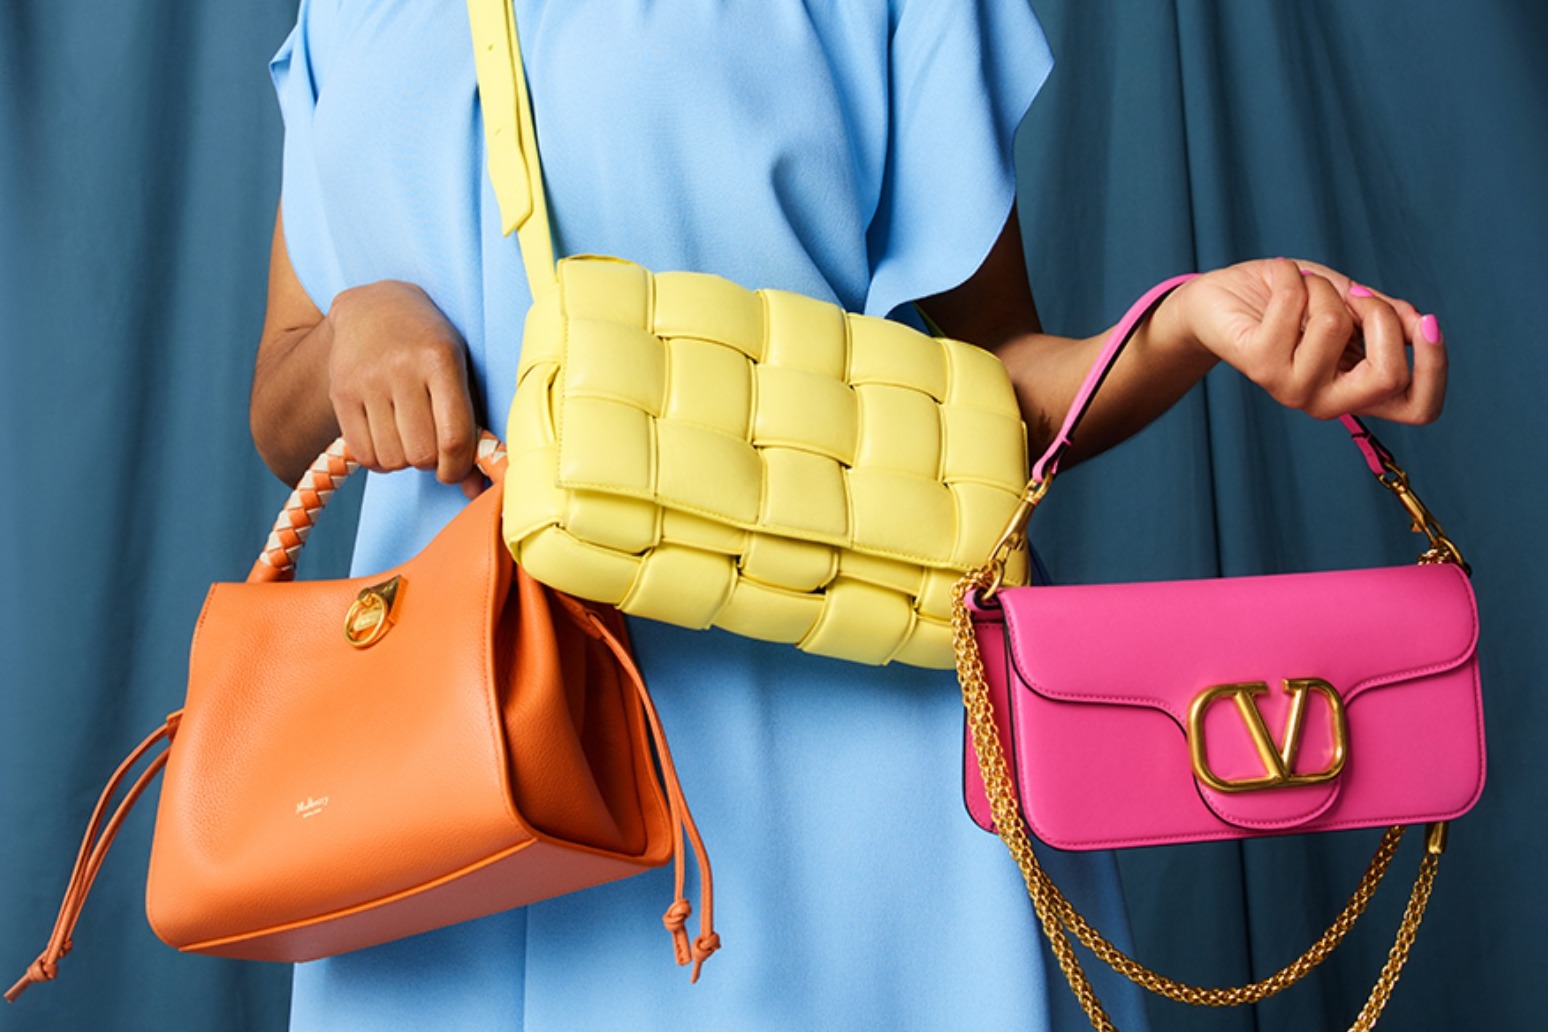 eBay UK launches Authenticity Guarantee for Luxury Handbags starring Zawe Ashton 